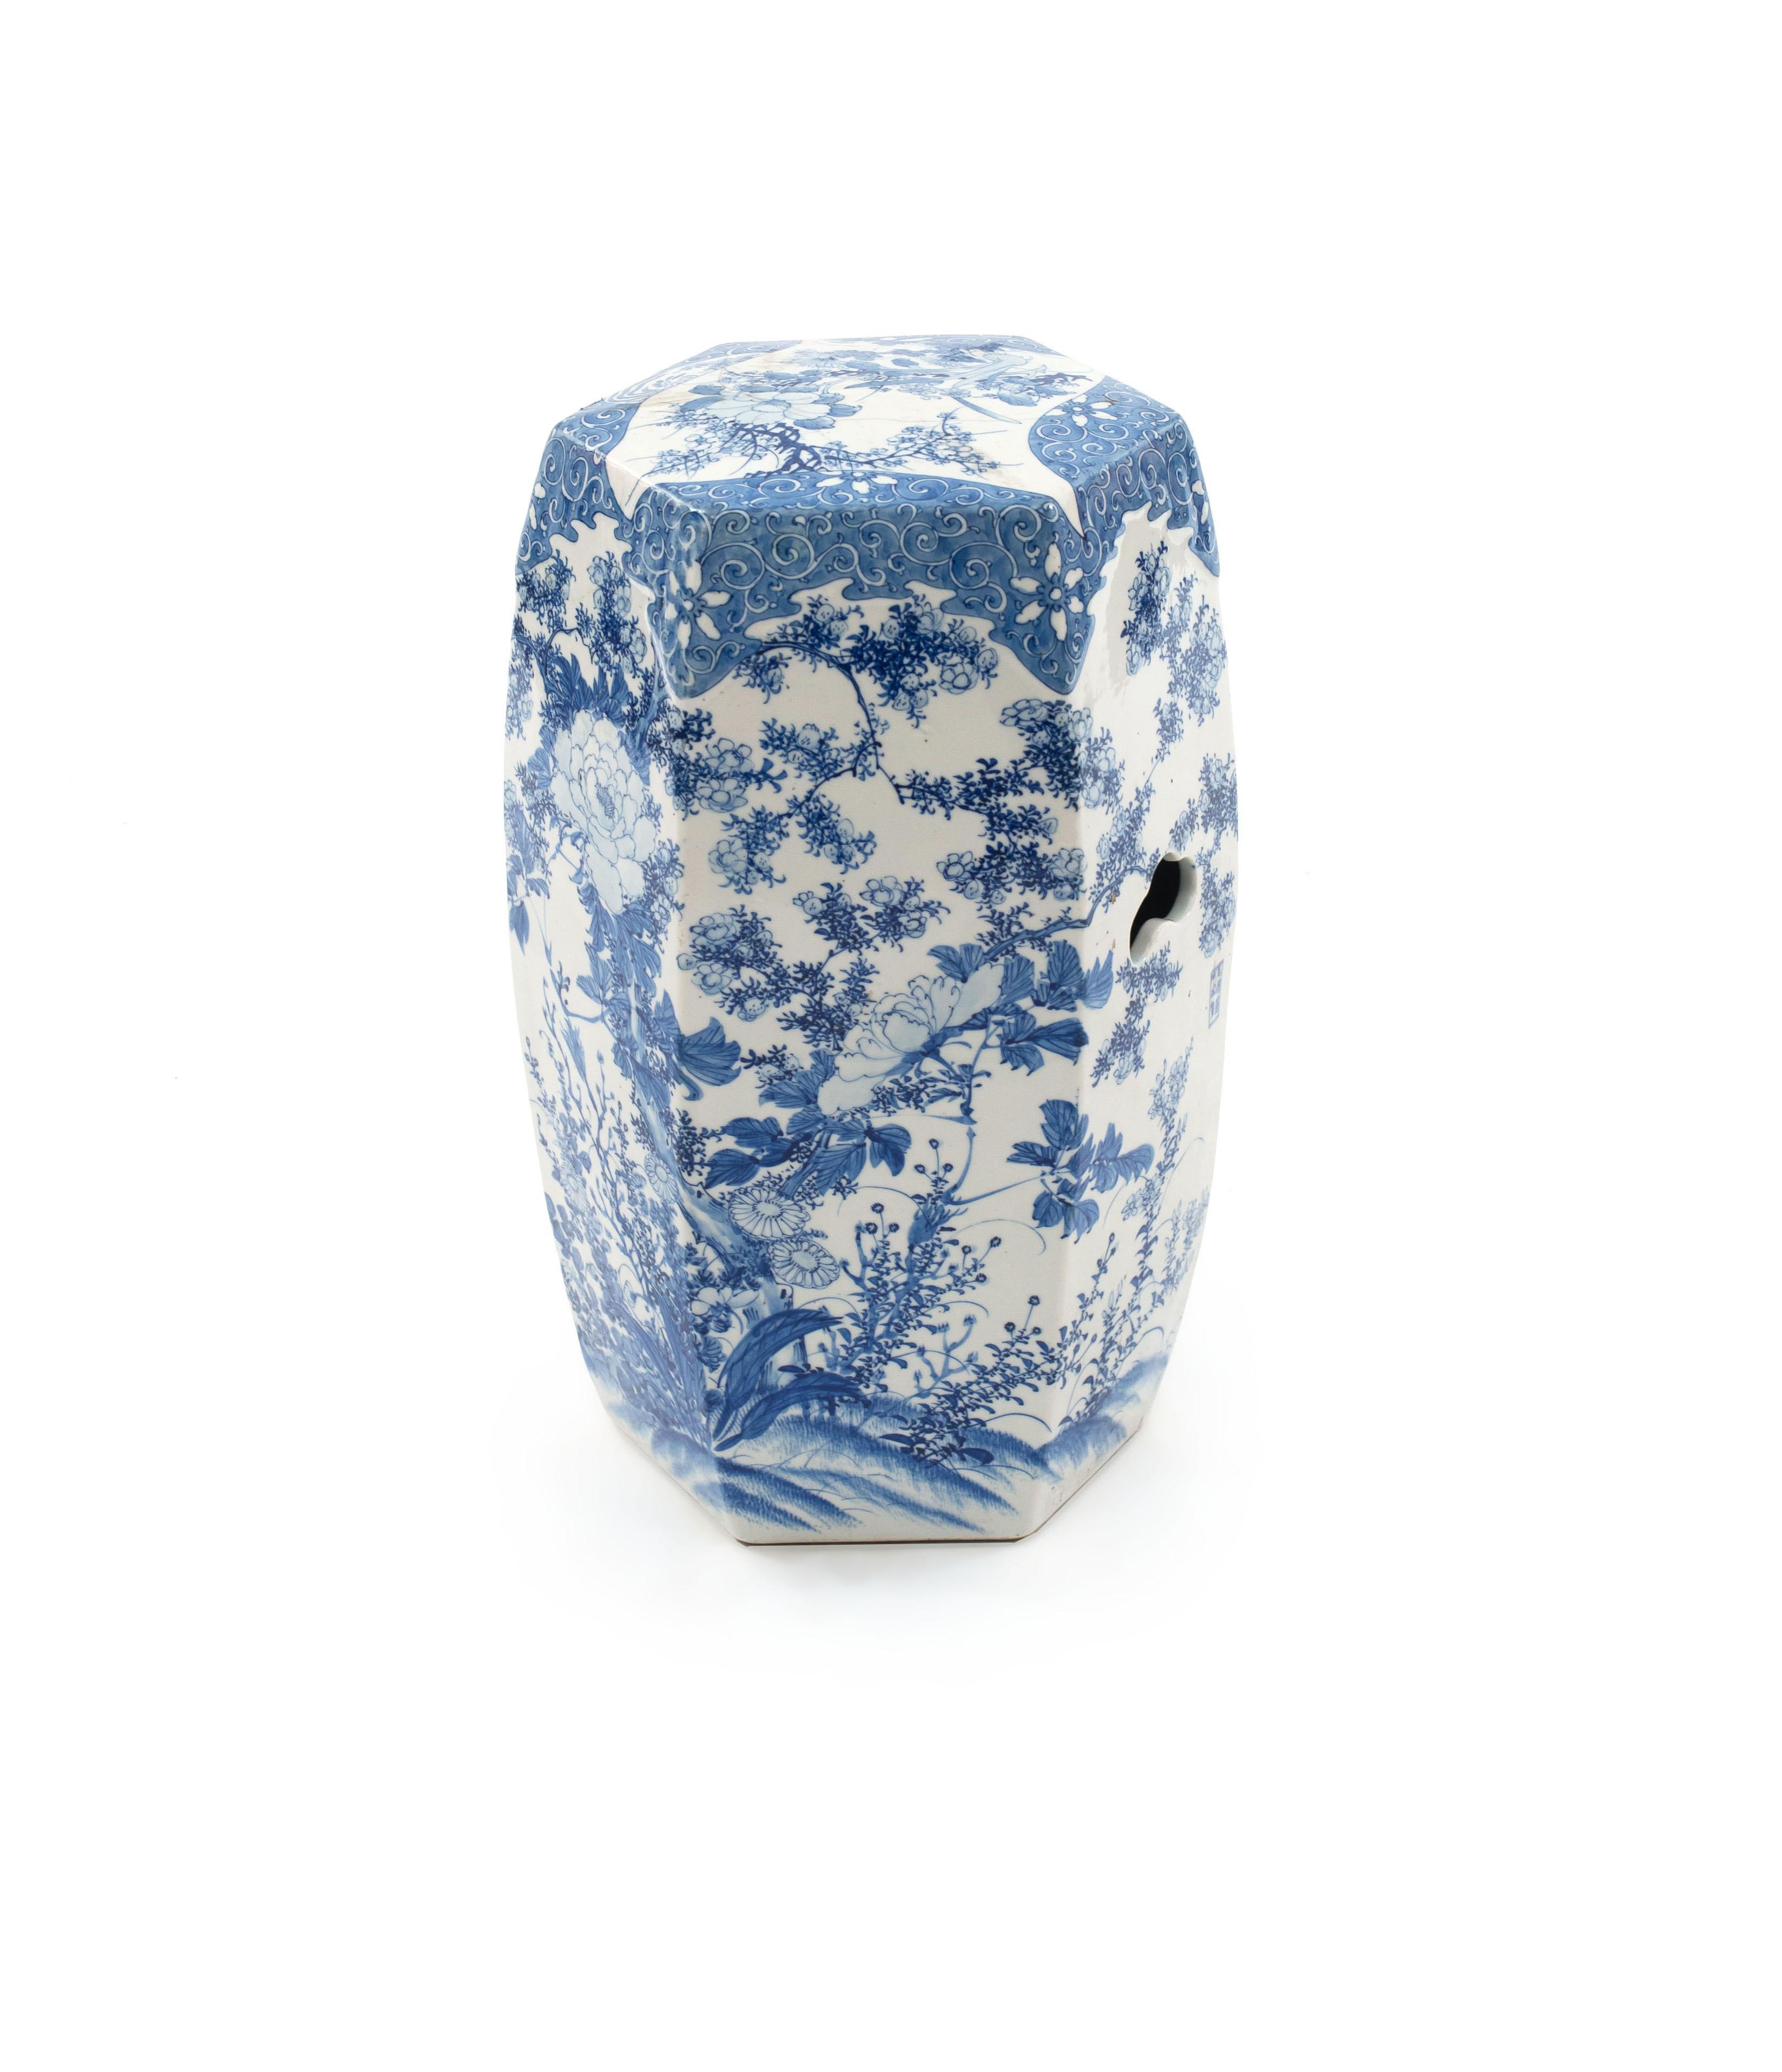 Siège de jardin en porcelaine émaillée bleu et blanc de style asiatique chinois, de section hexagonale, décoré de pivoines et de vignes en fleurs (19e/20e siècle)(similaire à Inv. #014642A)
